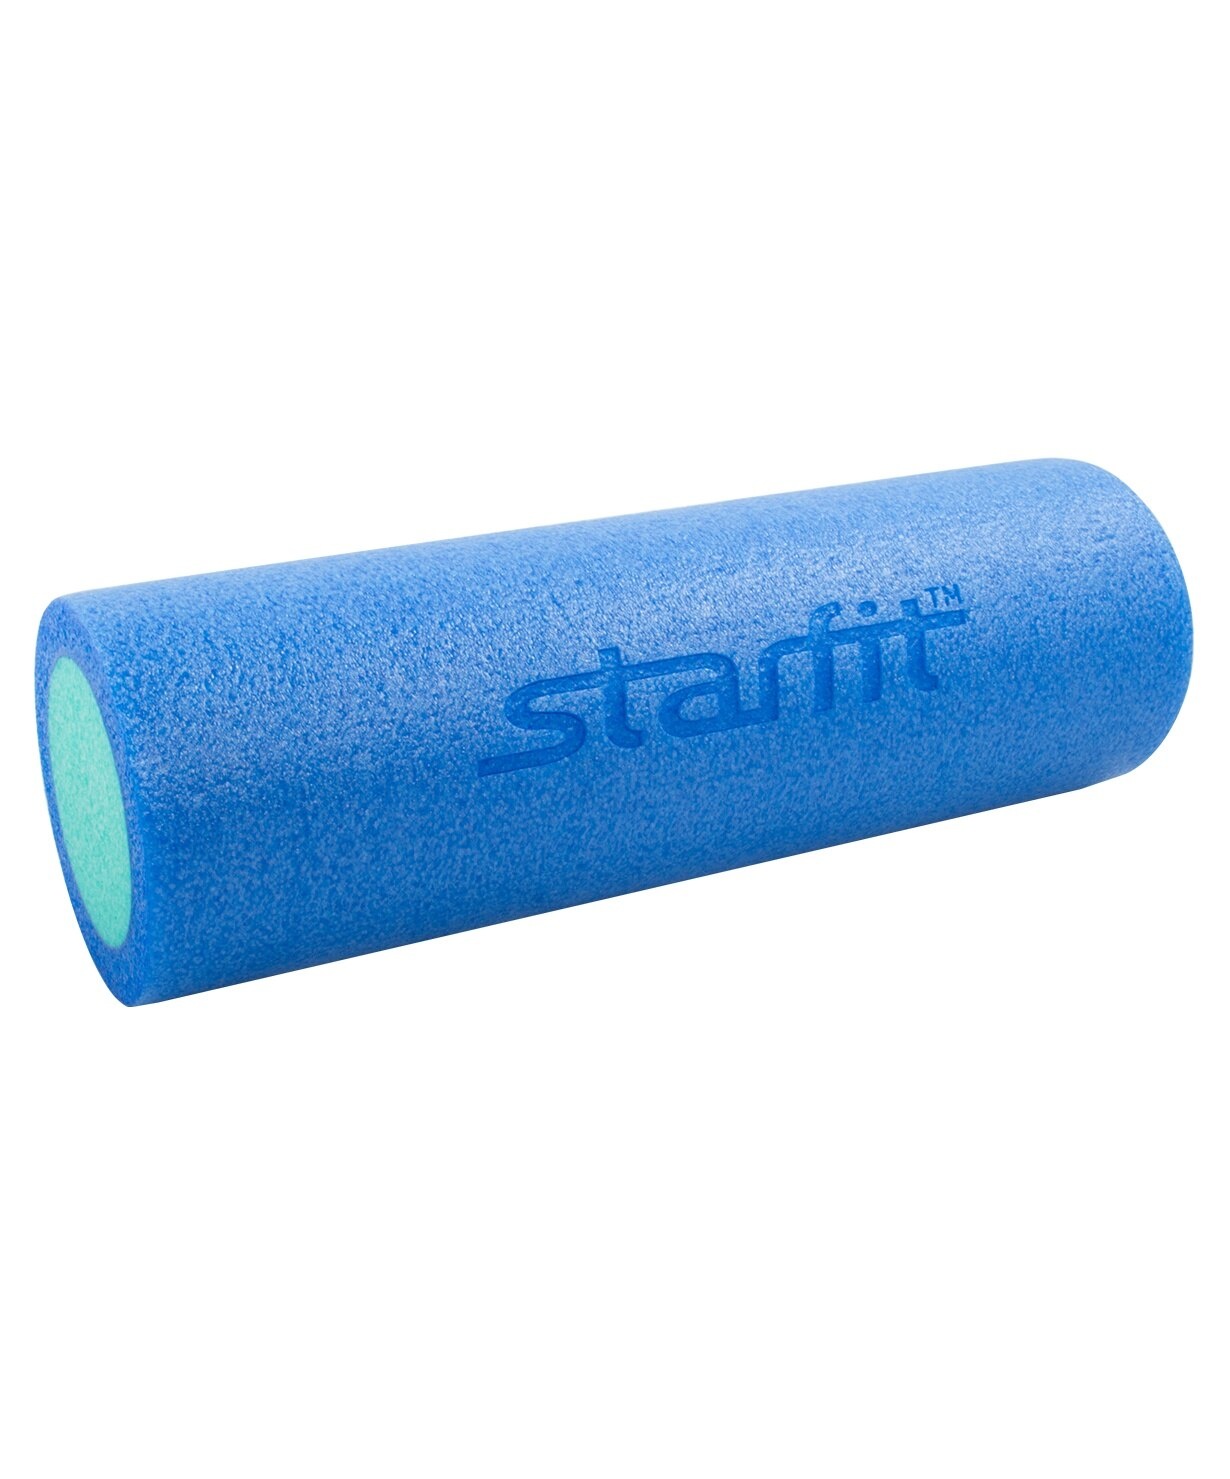 Ролик для йоги STARFIT Core FA-501-C-BL 45см x 15см, синий/голубой - фото